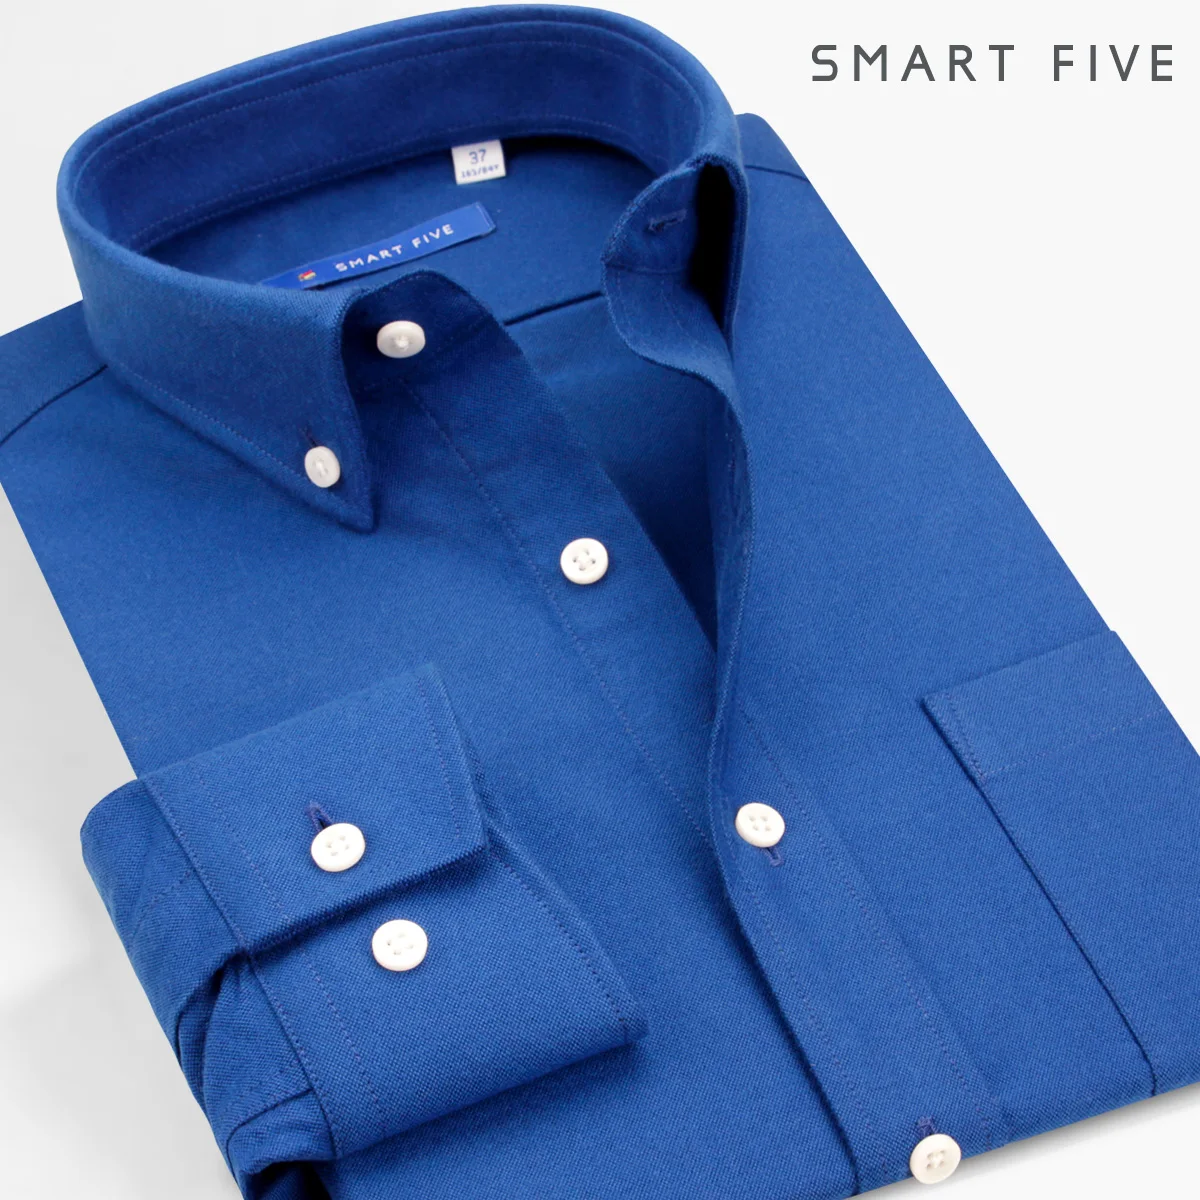 Smart Five рубашки домашние муж. для мужчин с длинным рукавом Хлопковая мужская рубашка 2019 сезон: весна-лето camisa masculina camiseta hombre плюс размеры 45 46